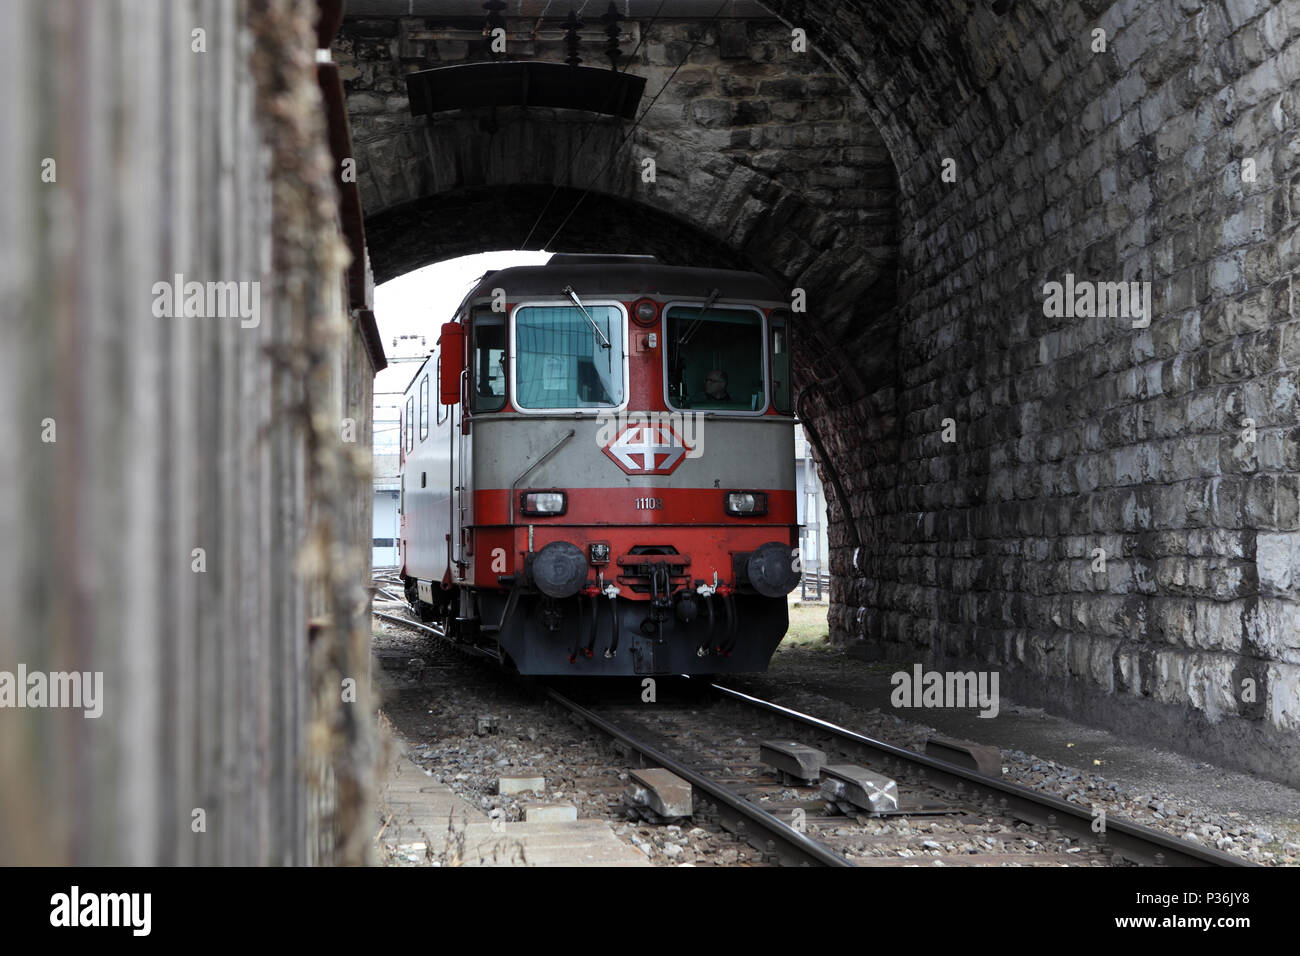 Zurigo, Svizzera, vagone ferroviario delle Ferrovie Federali Svizzere aziona attraverso un tunnel Foto Stock